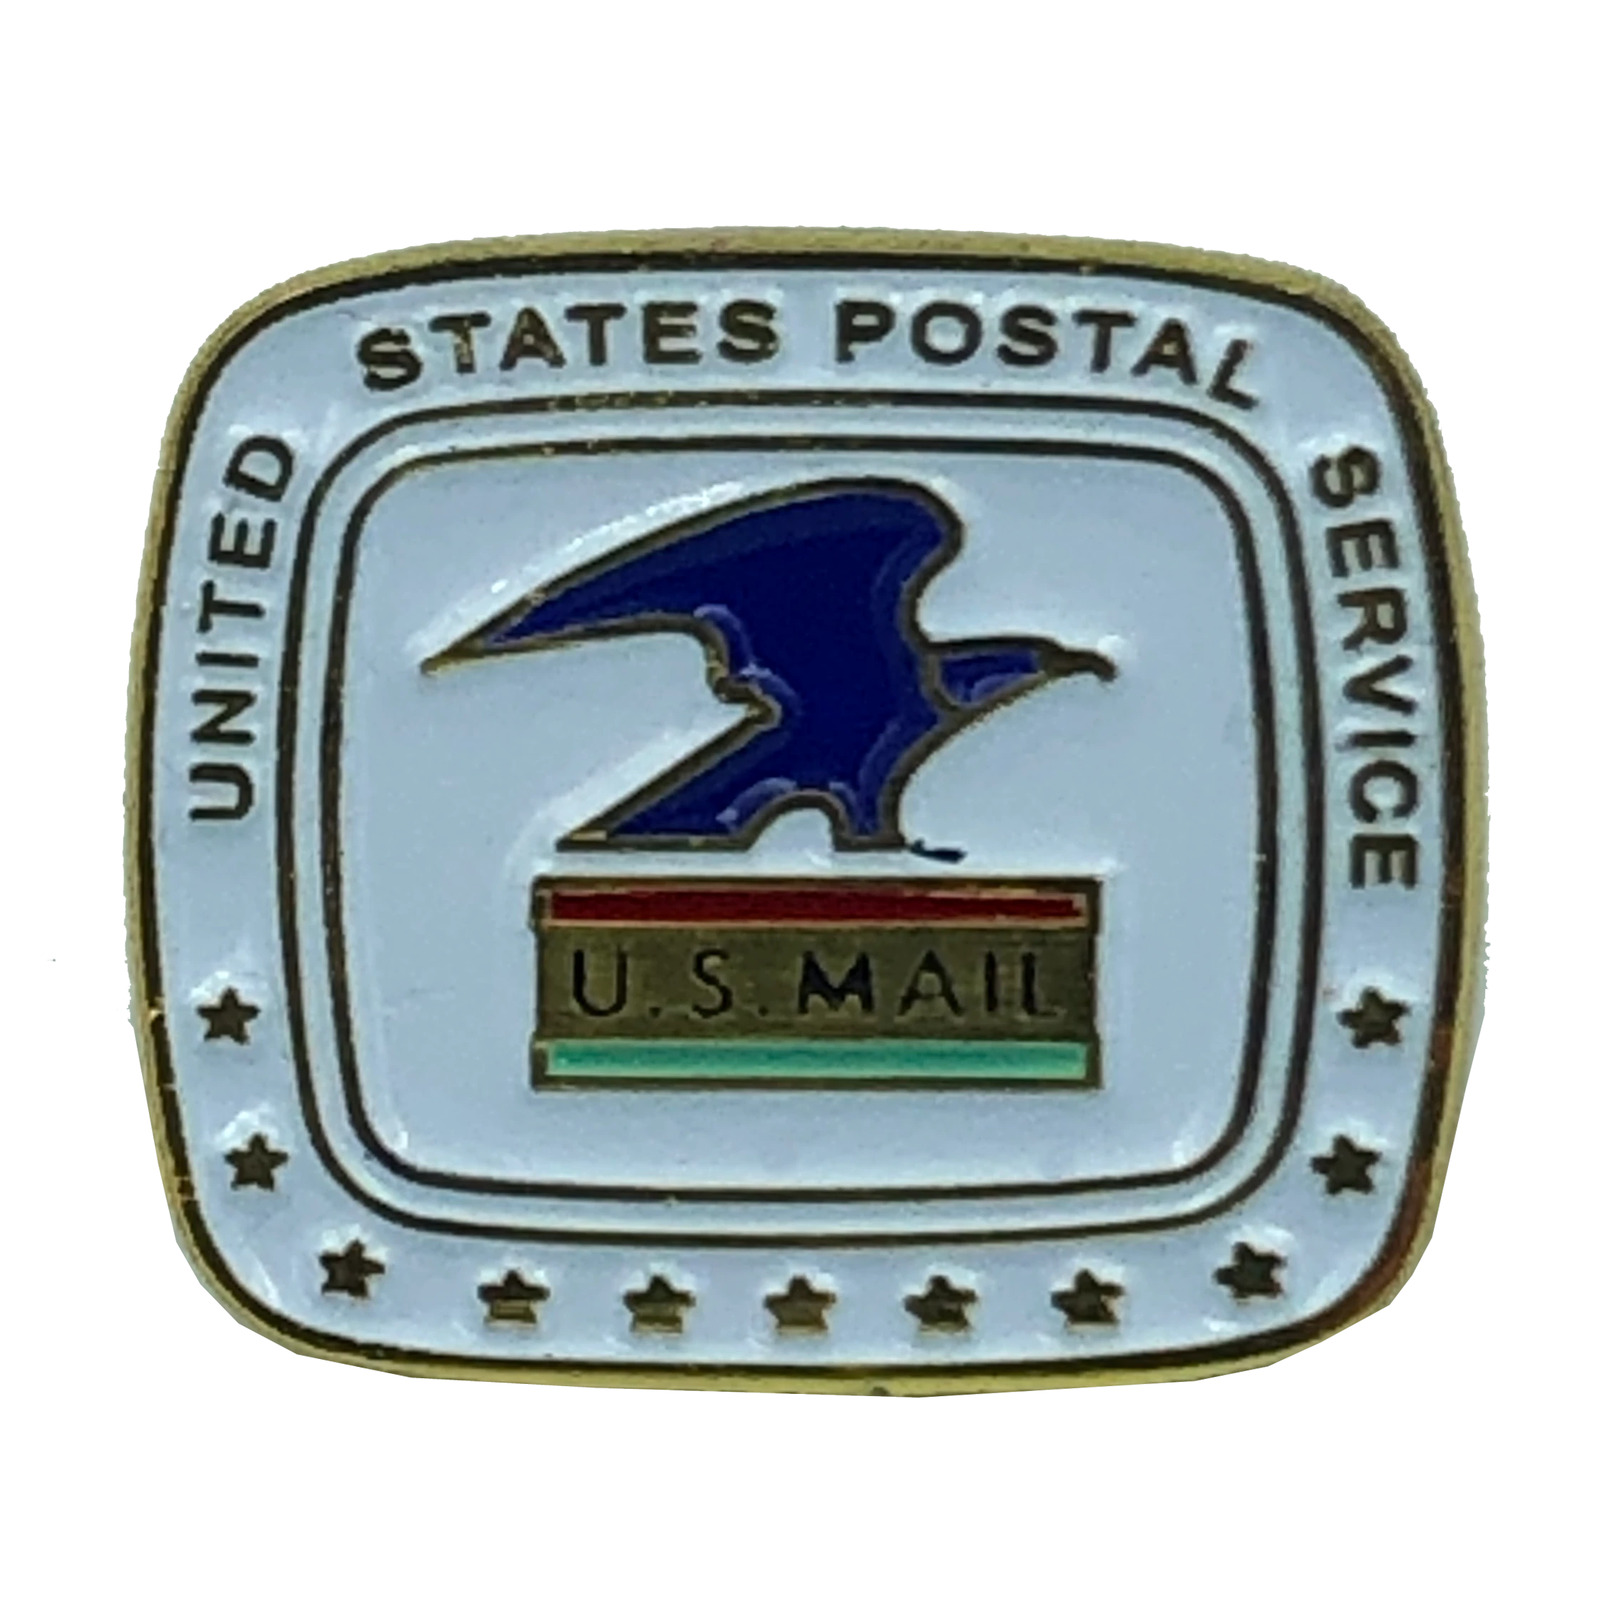 JJ-016 USPS Postal Service Letter Carrier Inspector pins